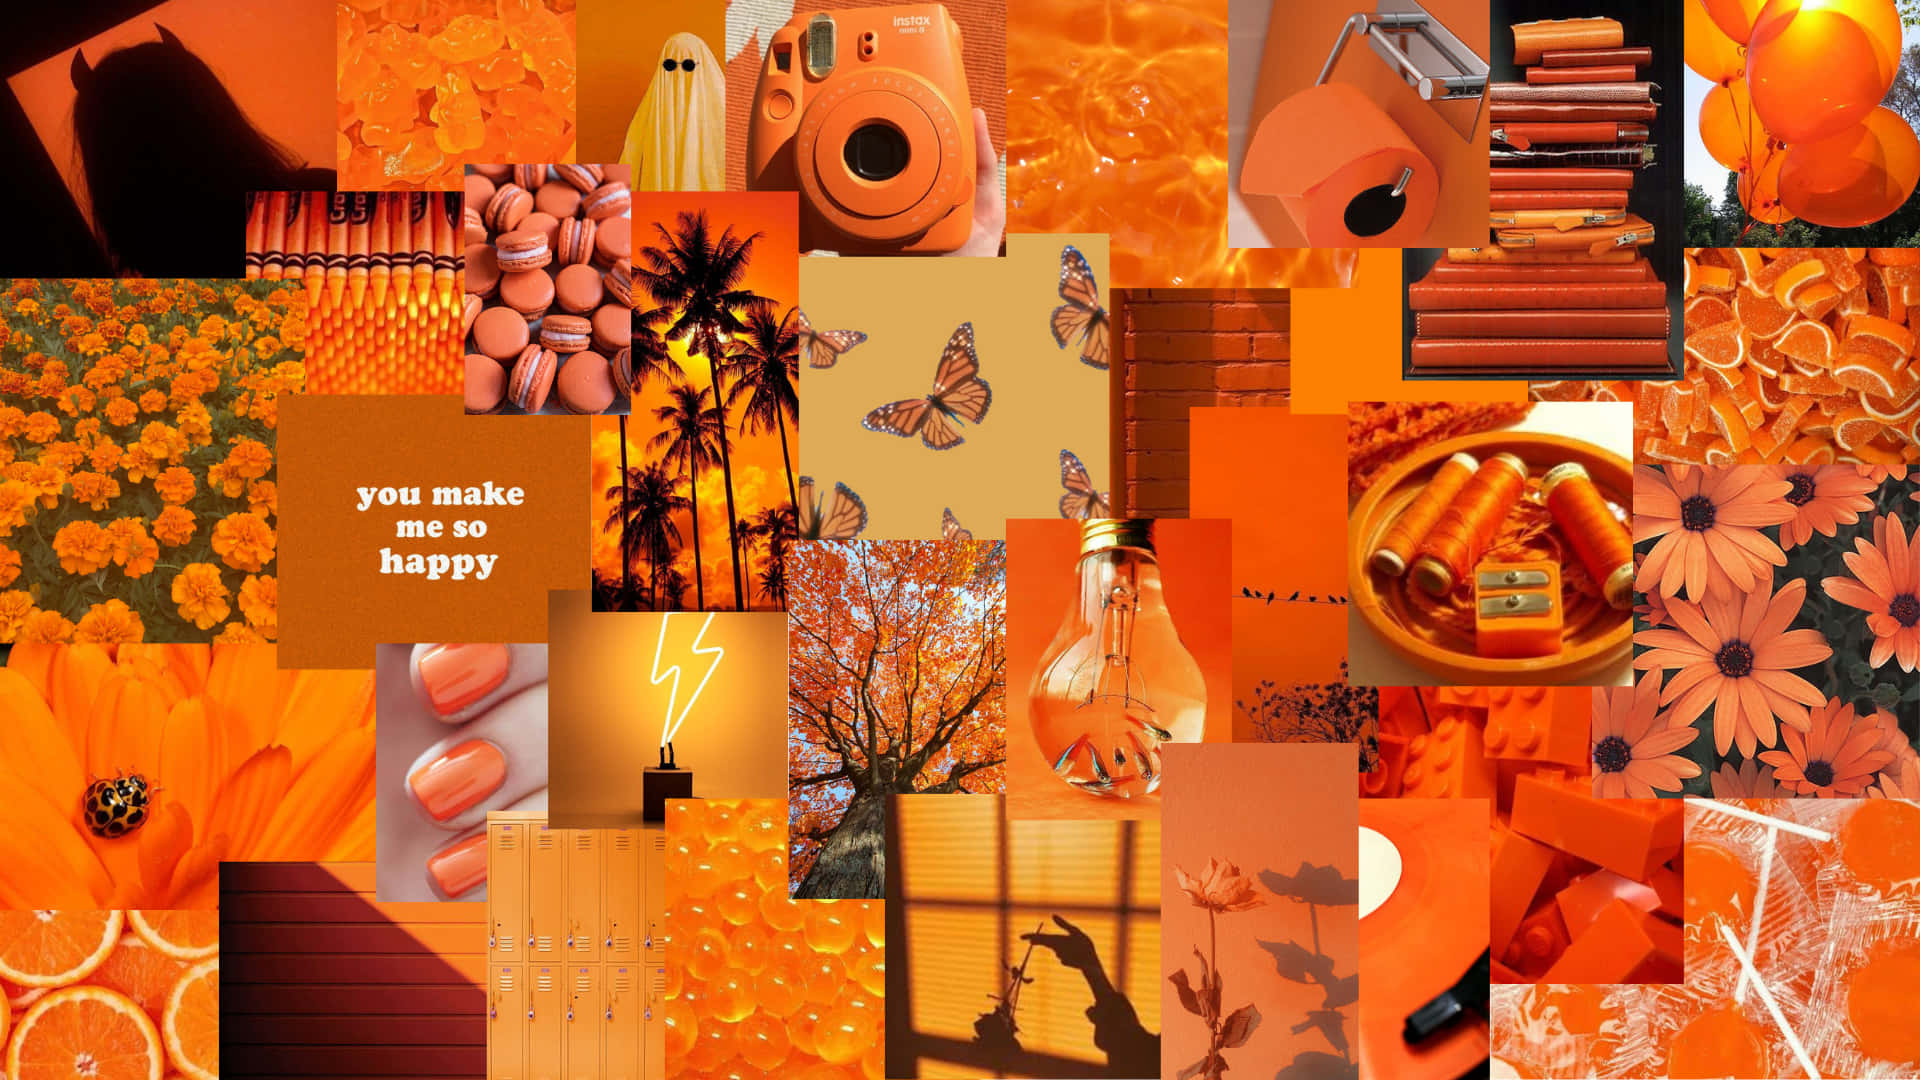 Download Orange Desktop Wallpaper | Wallpapers.com